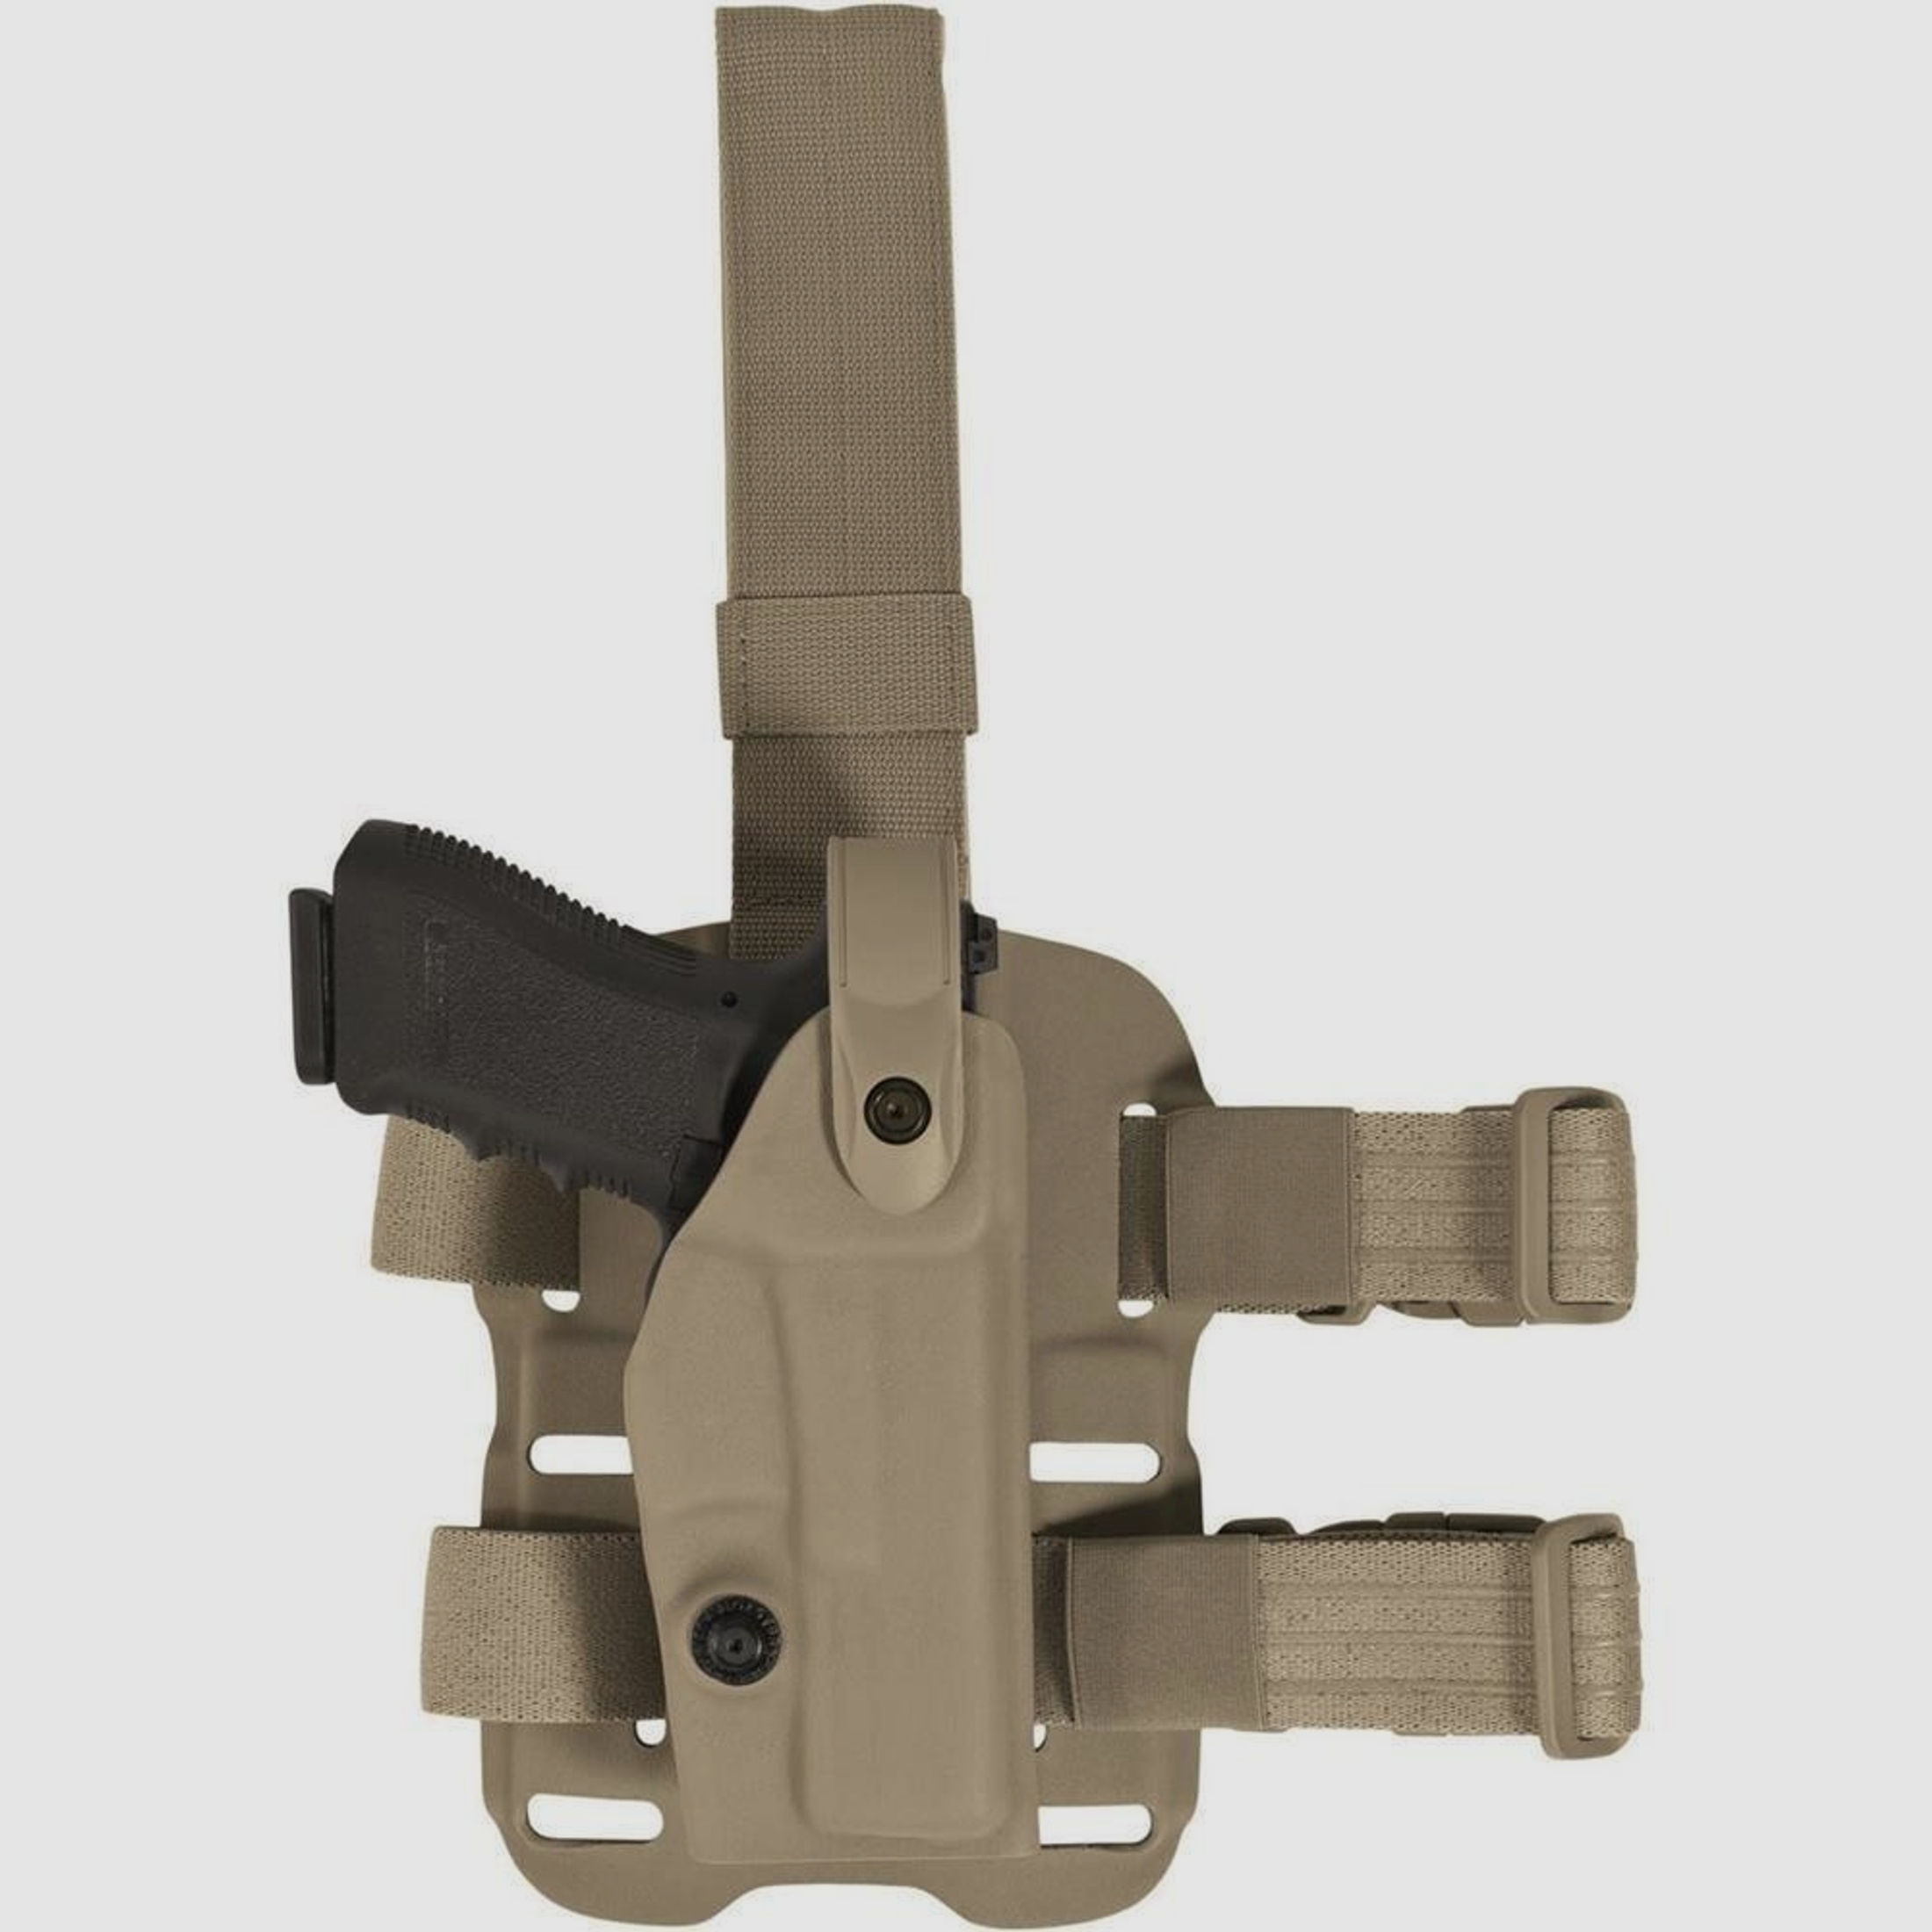 Modulares Oberschenkelholster "VETERAN" mit Sicherheitslevel II Glock 17/18/22/31/37-OD Green-Linkshänder